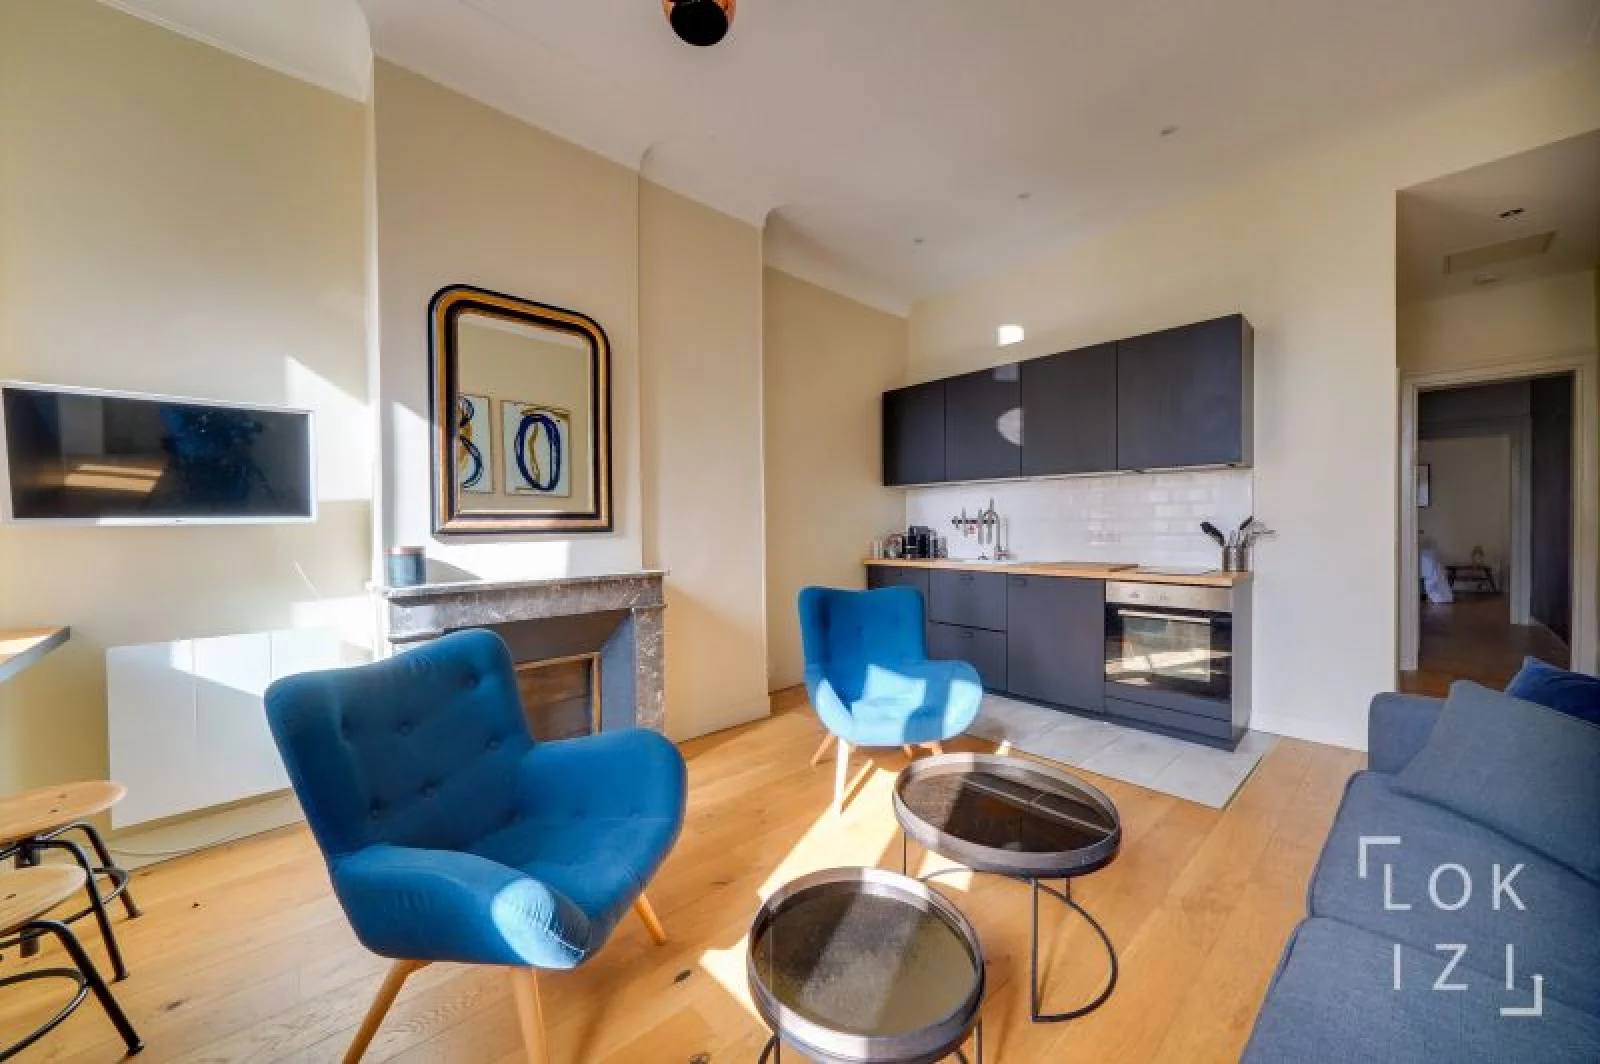 Location appartement duplex meublé 3 pièces (Bordeaux centre)